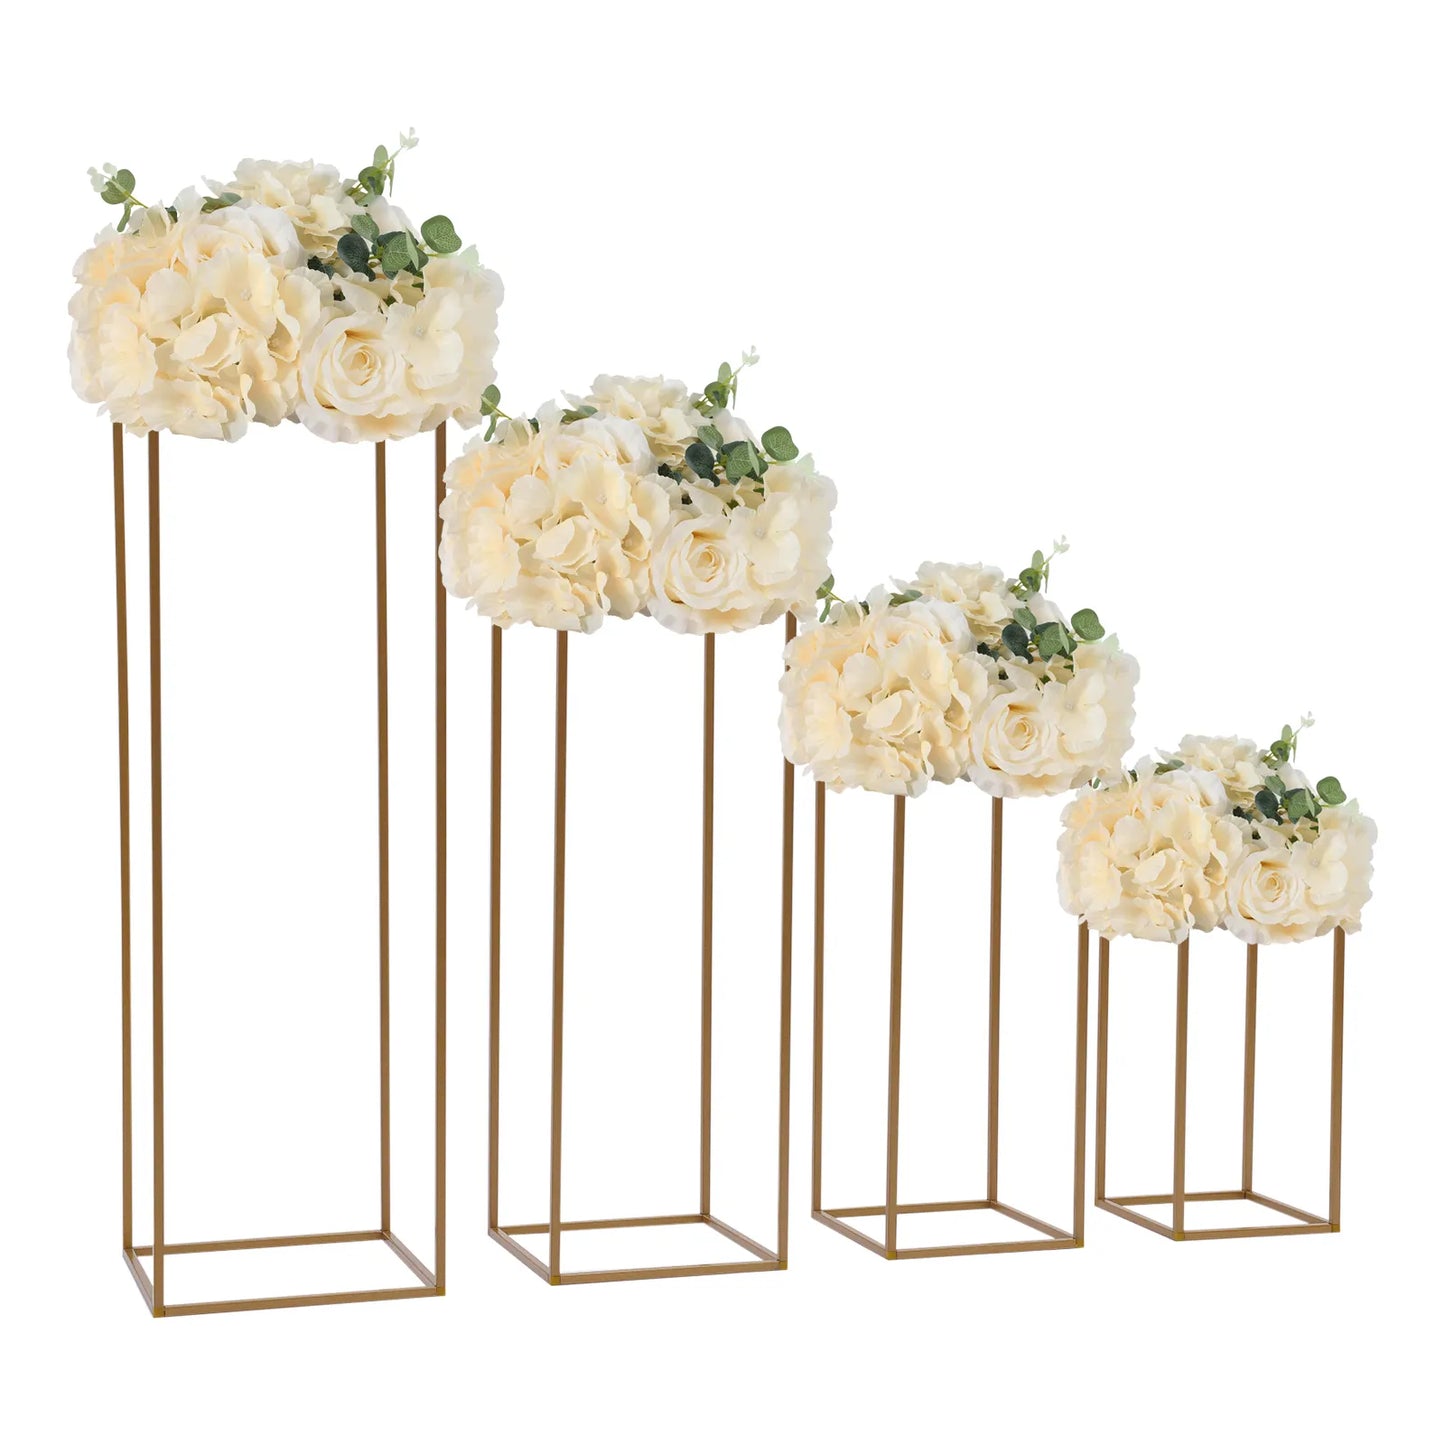 4Pcs Gold Metal Flower Vase Stands